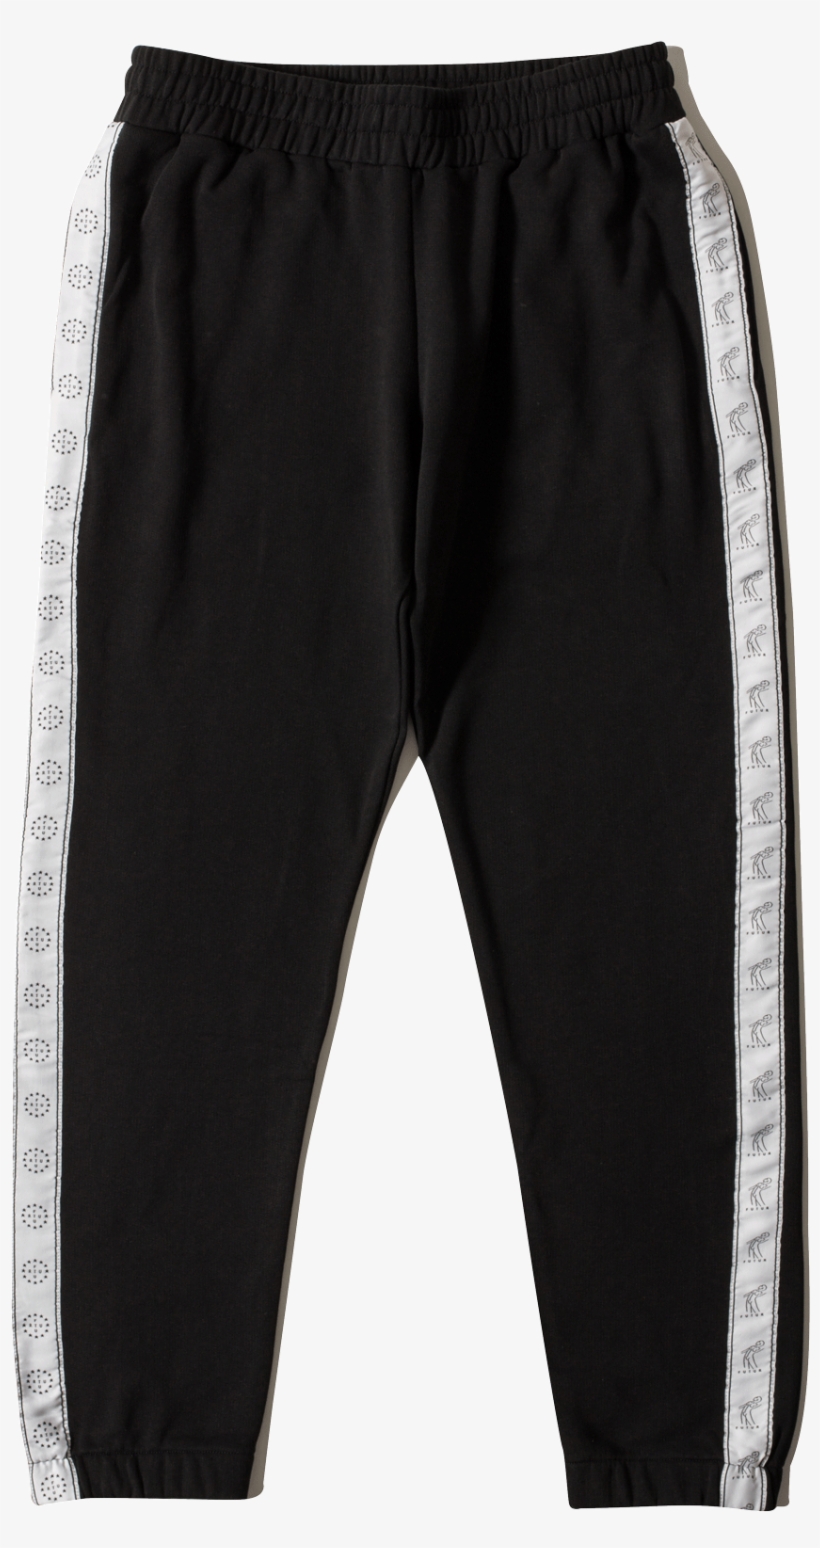 Black Pants Png - Tape Pants, transparent png #2793189